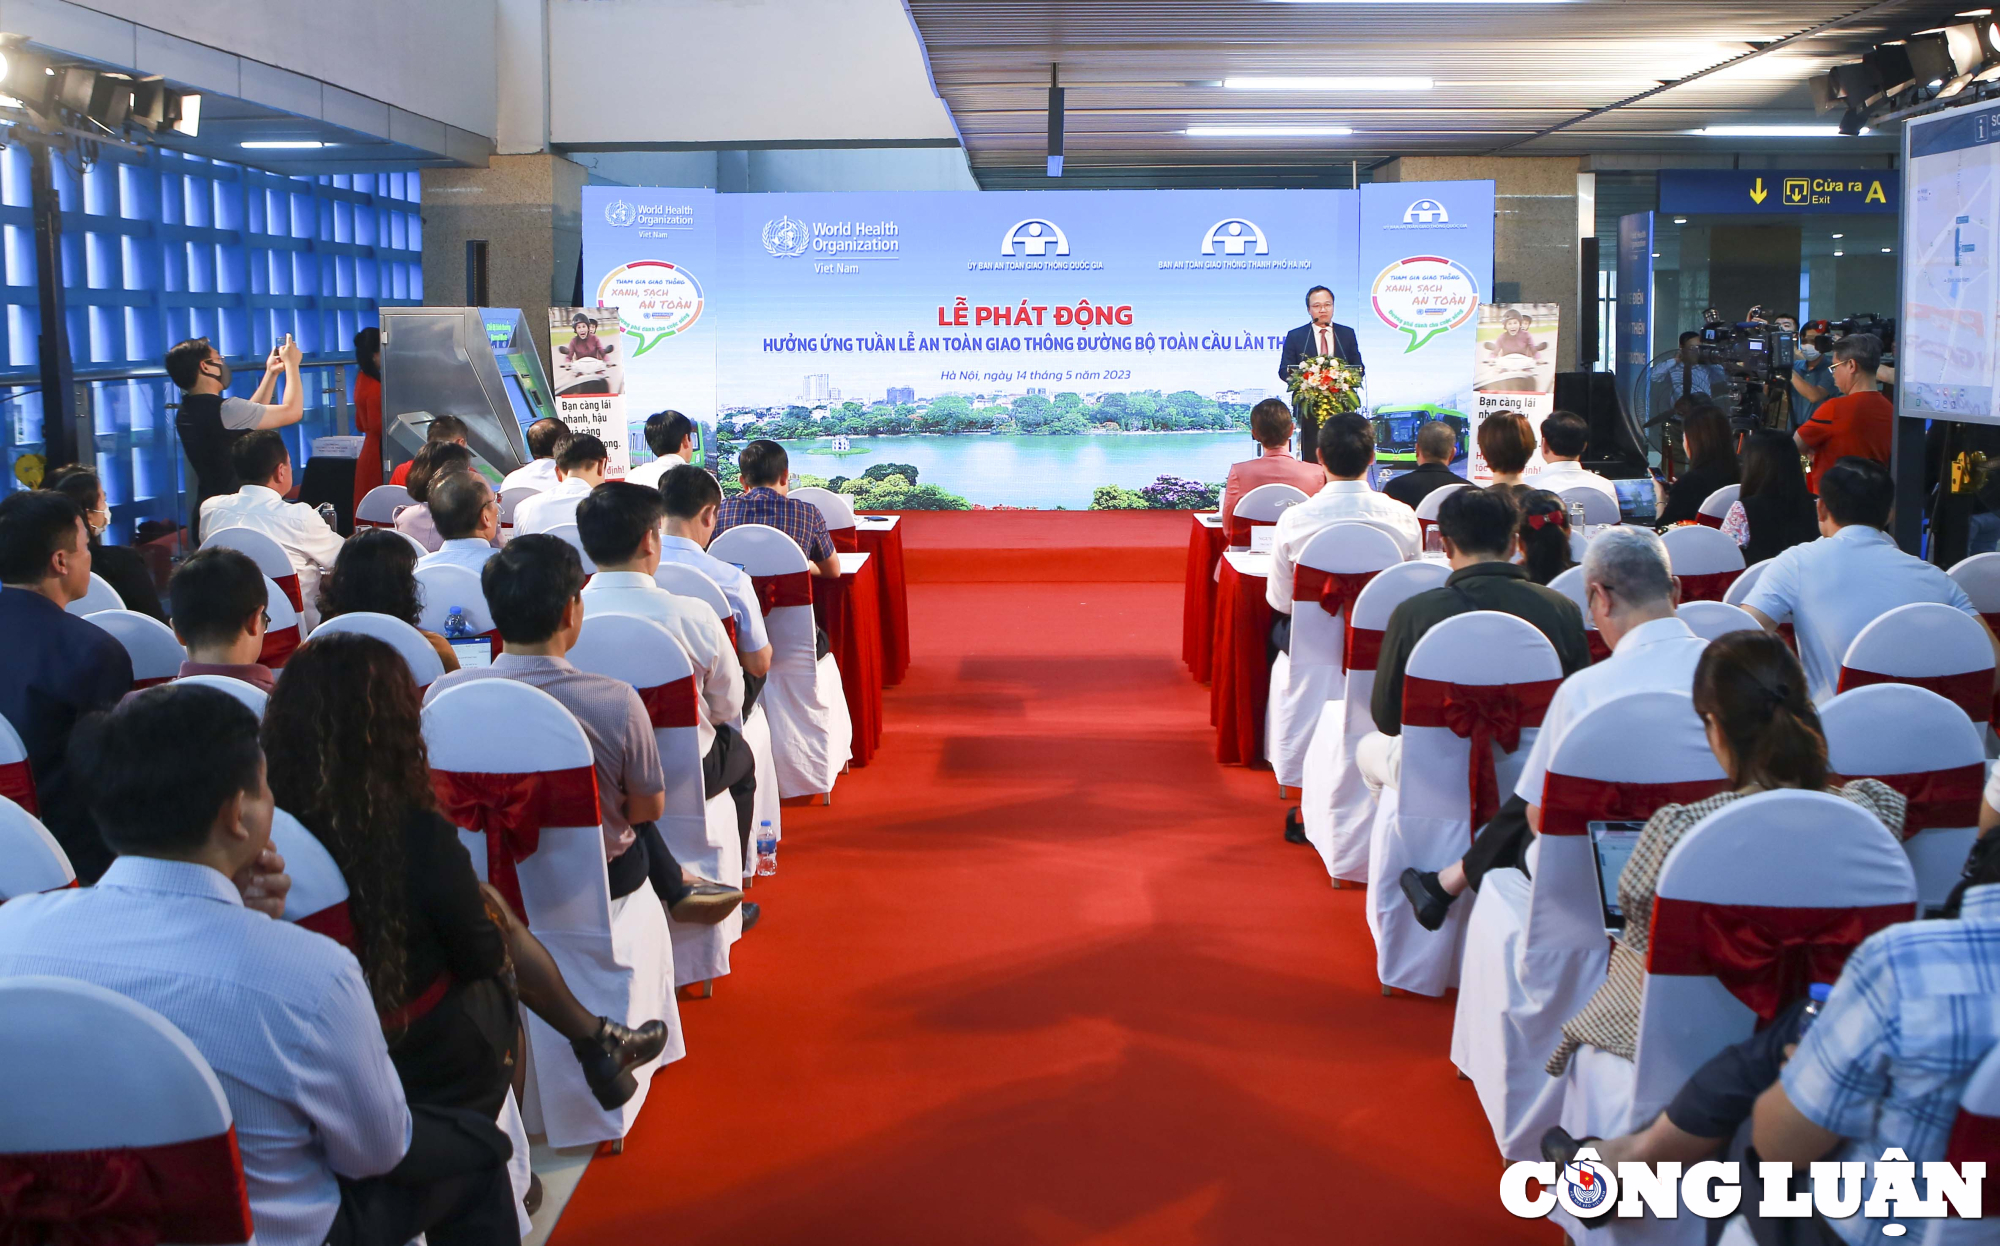 Sáng 14/5, tại Hà Nội, Ủy ban An toàn giao thông quốc gia (UBATGTQG) phối hợp với Ban ATGT thành phố Hà Nội tổ chức Lễ phát động hưởơng ứng Tuần lễ An toàn giao thông đường bộ toàn cầu lần thứ 7.